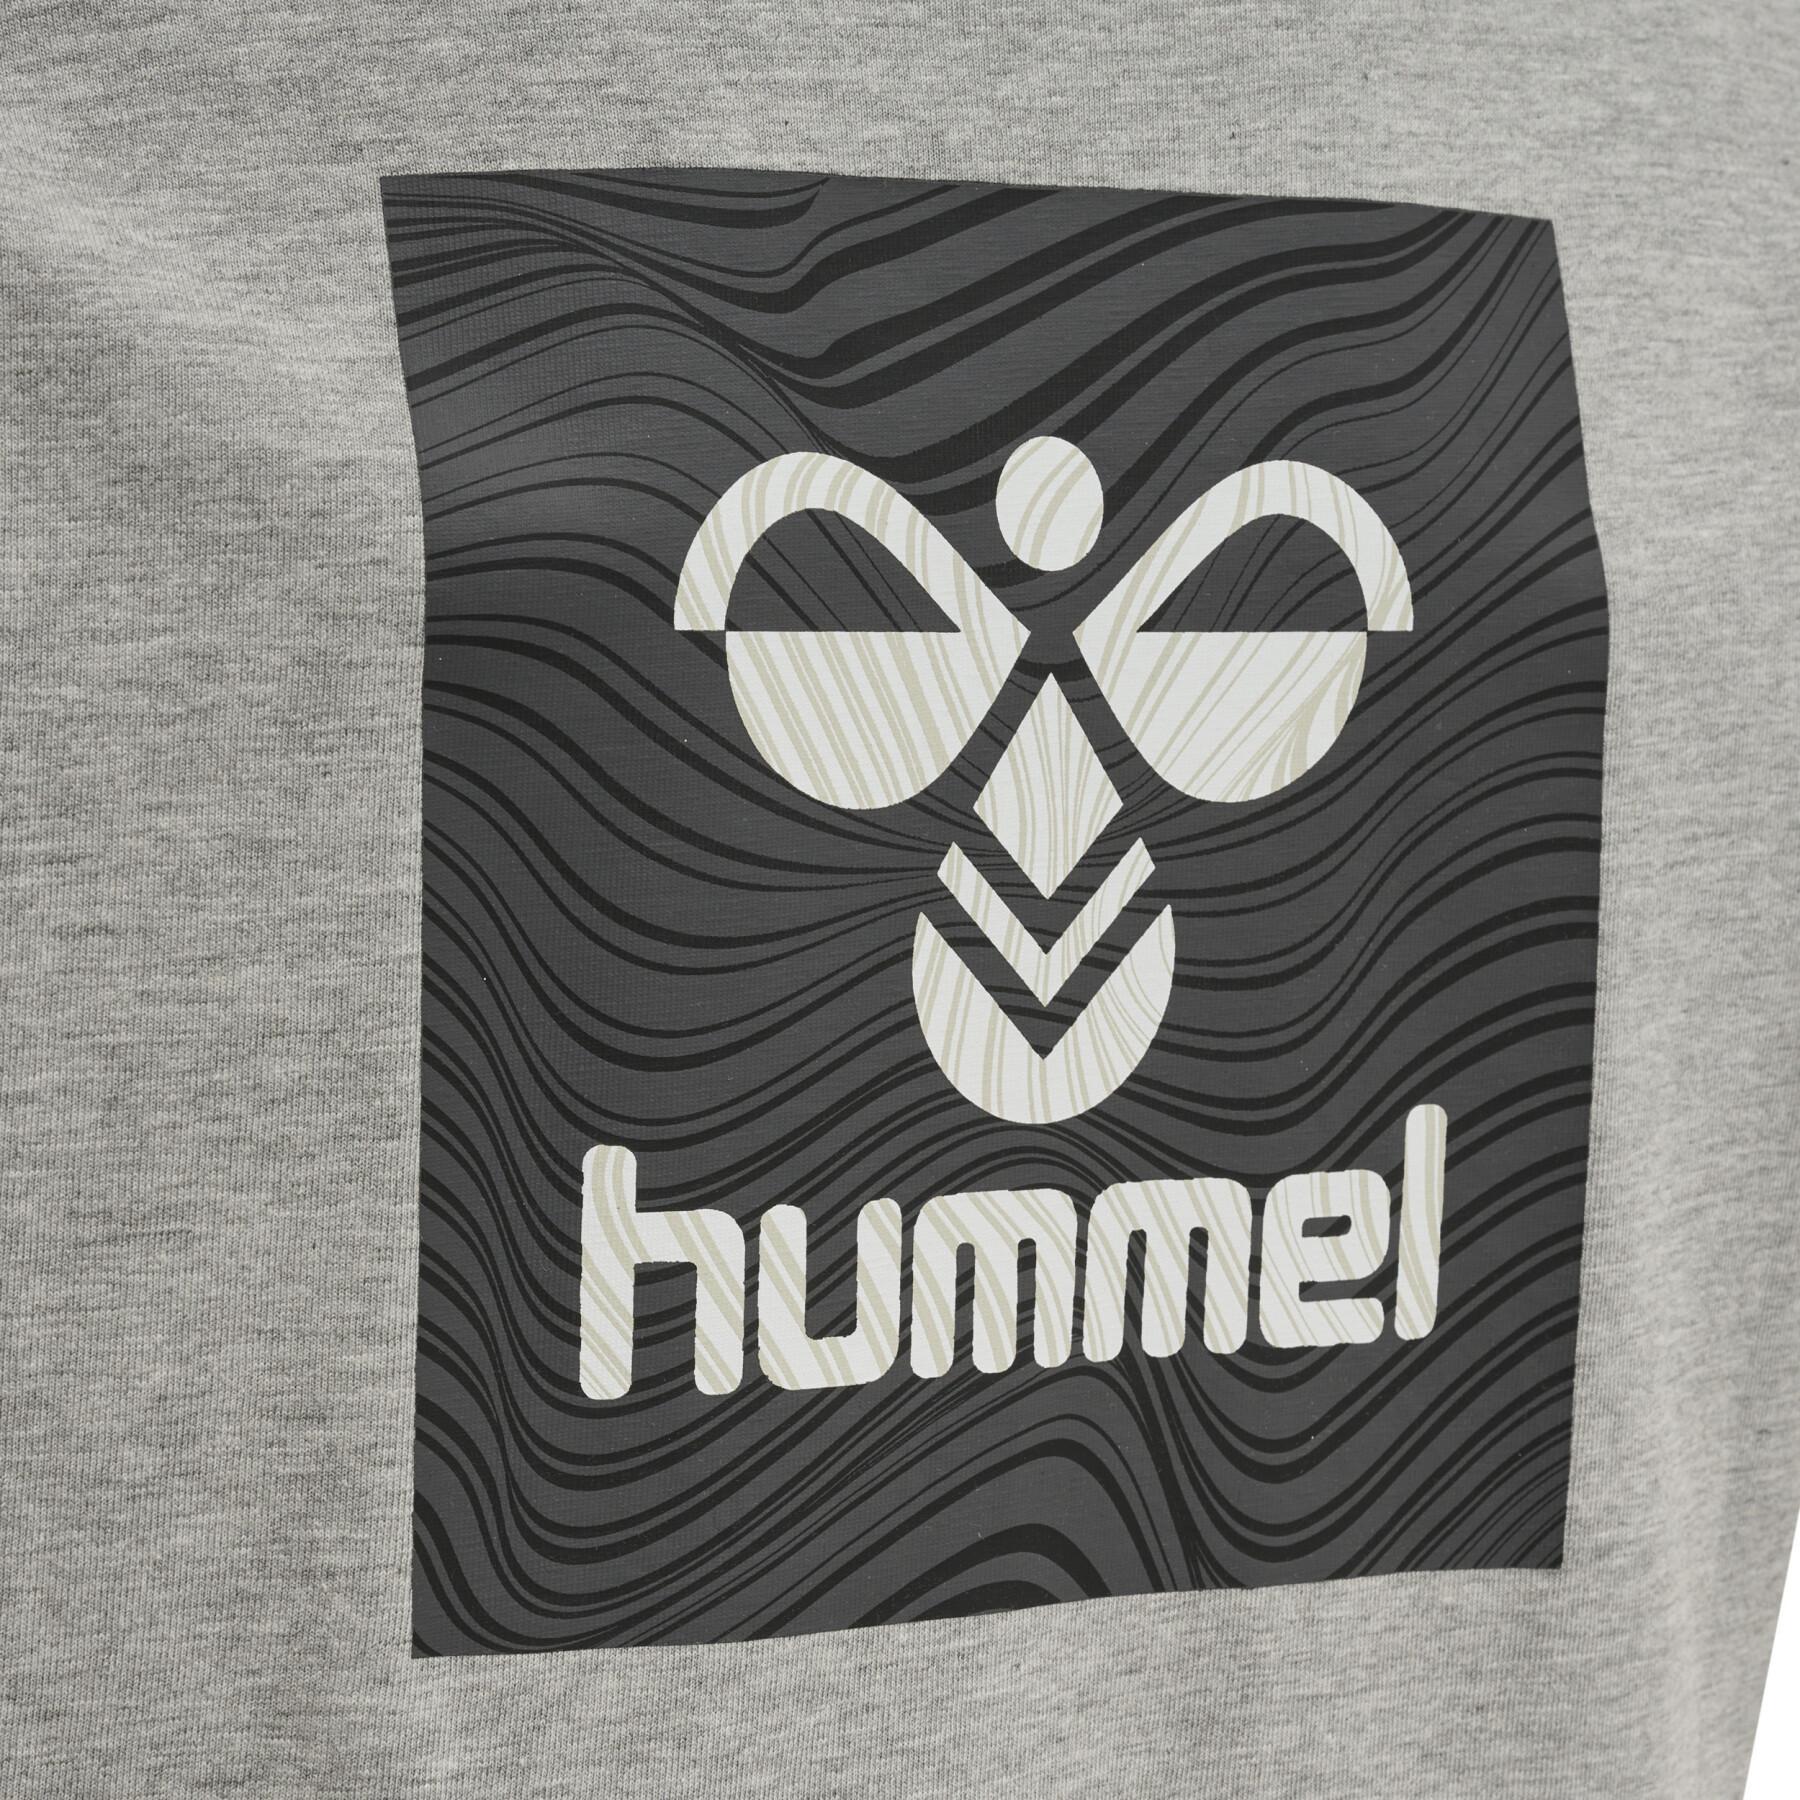 Maglietta per bambini Hummel OFF - Grid